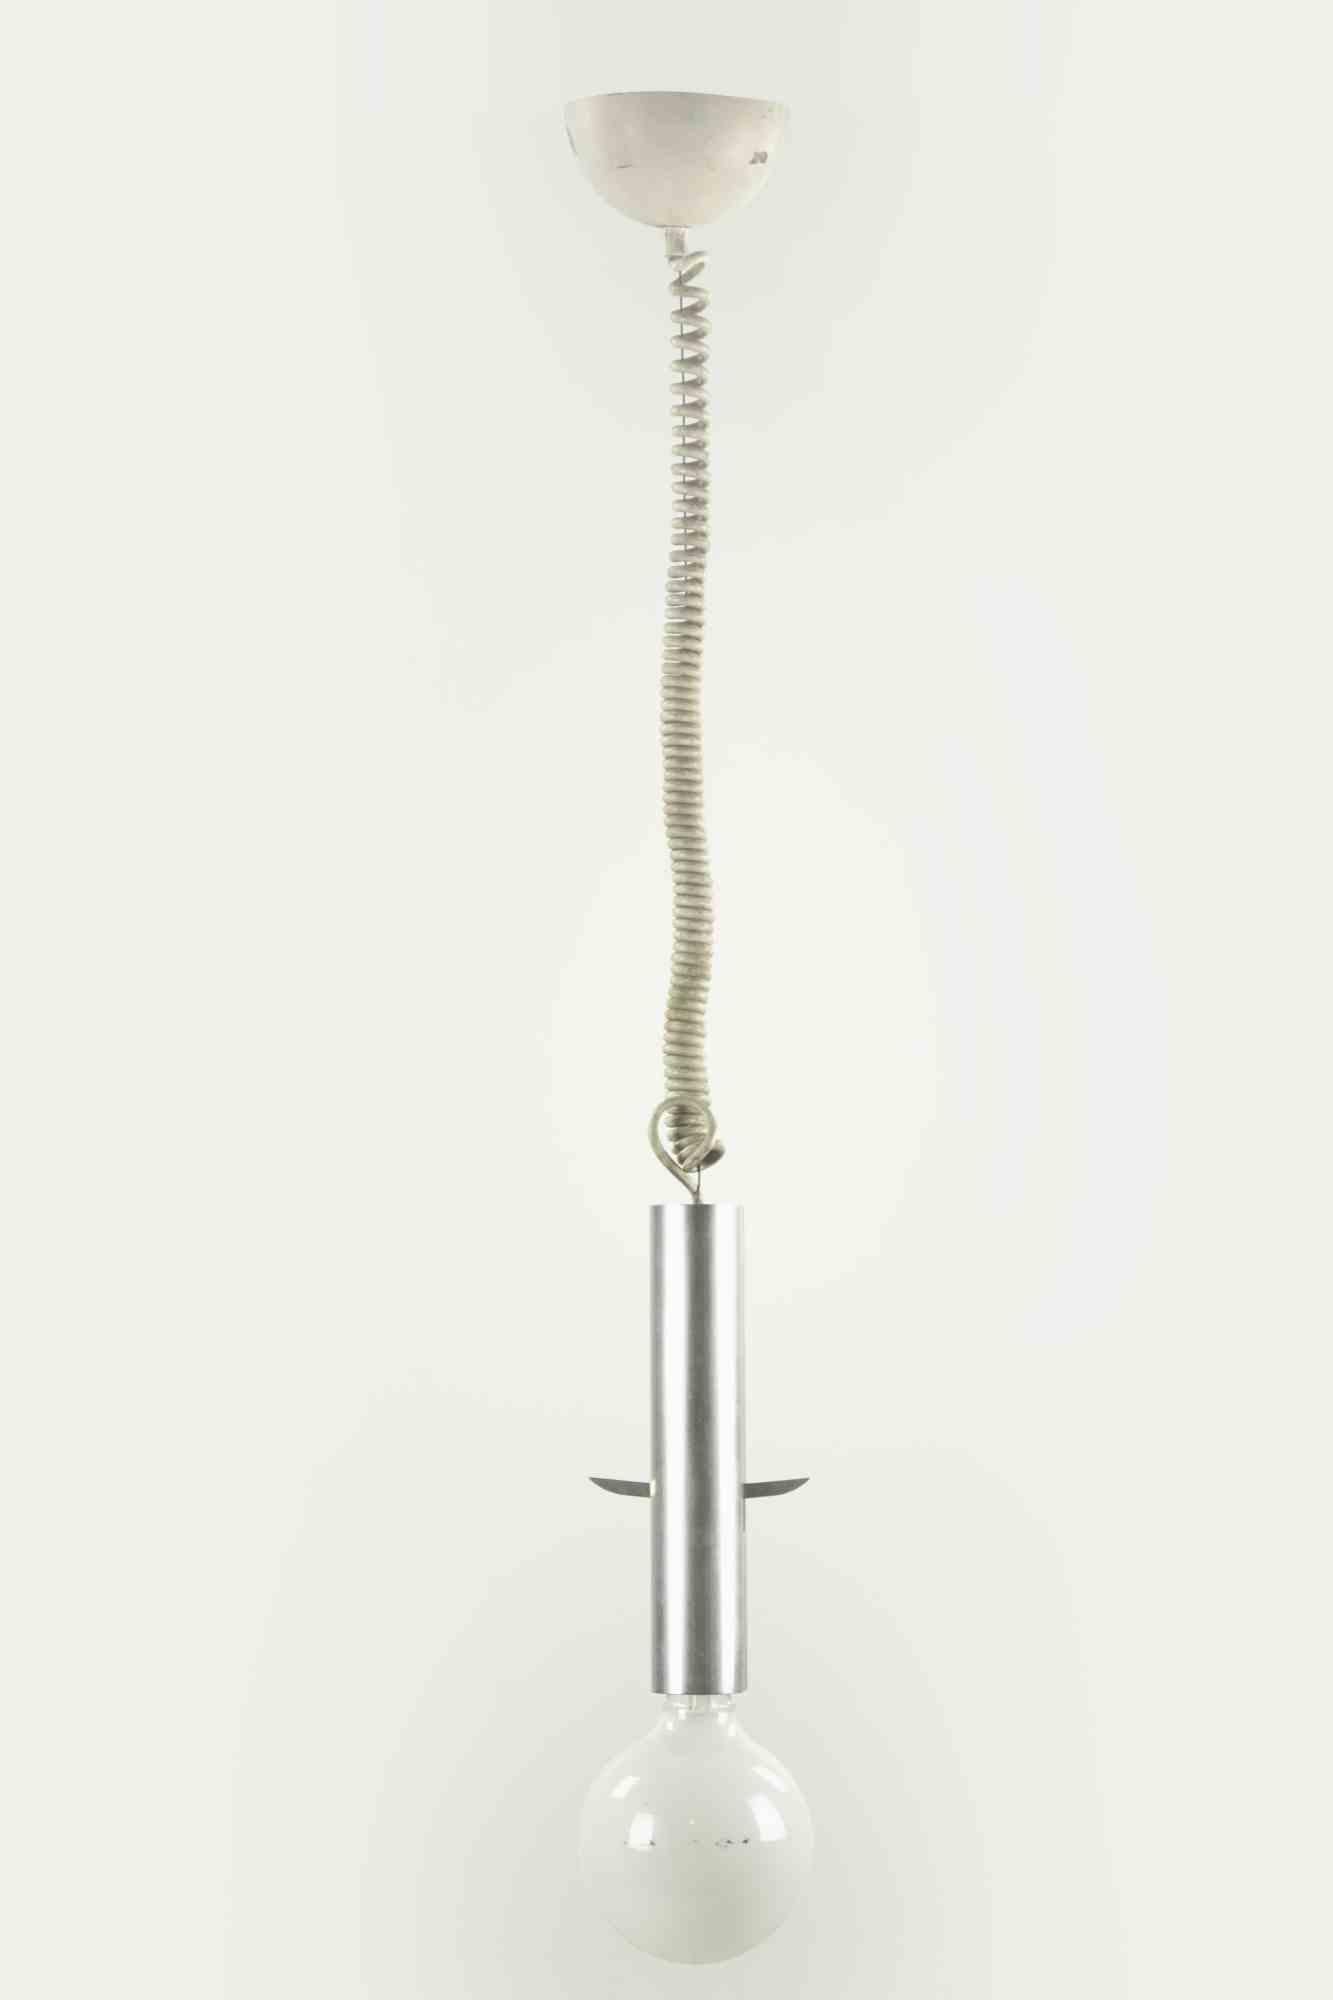 Die Pendelleuchte ist eine originelle Lampe, die in den 1970er Jahren von Gaetano Sciolari entworfen wurde.

Eine minimalistische und elegante Leuchte mit einer röhrenförmigen Metallstruktur.

Neuwertiger Zustand.

Eine Ikone, die gesammelt